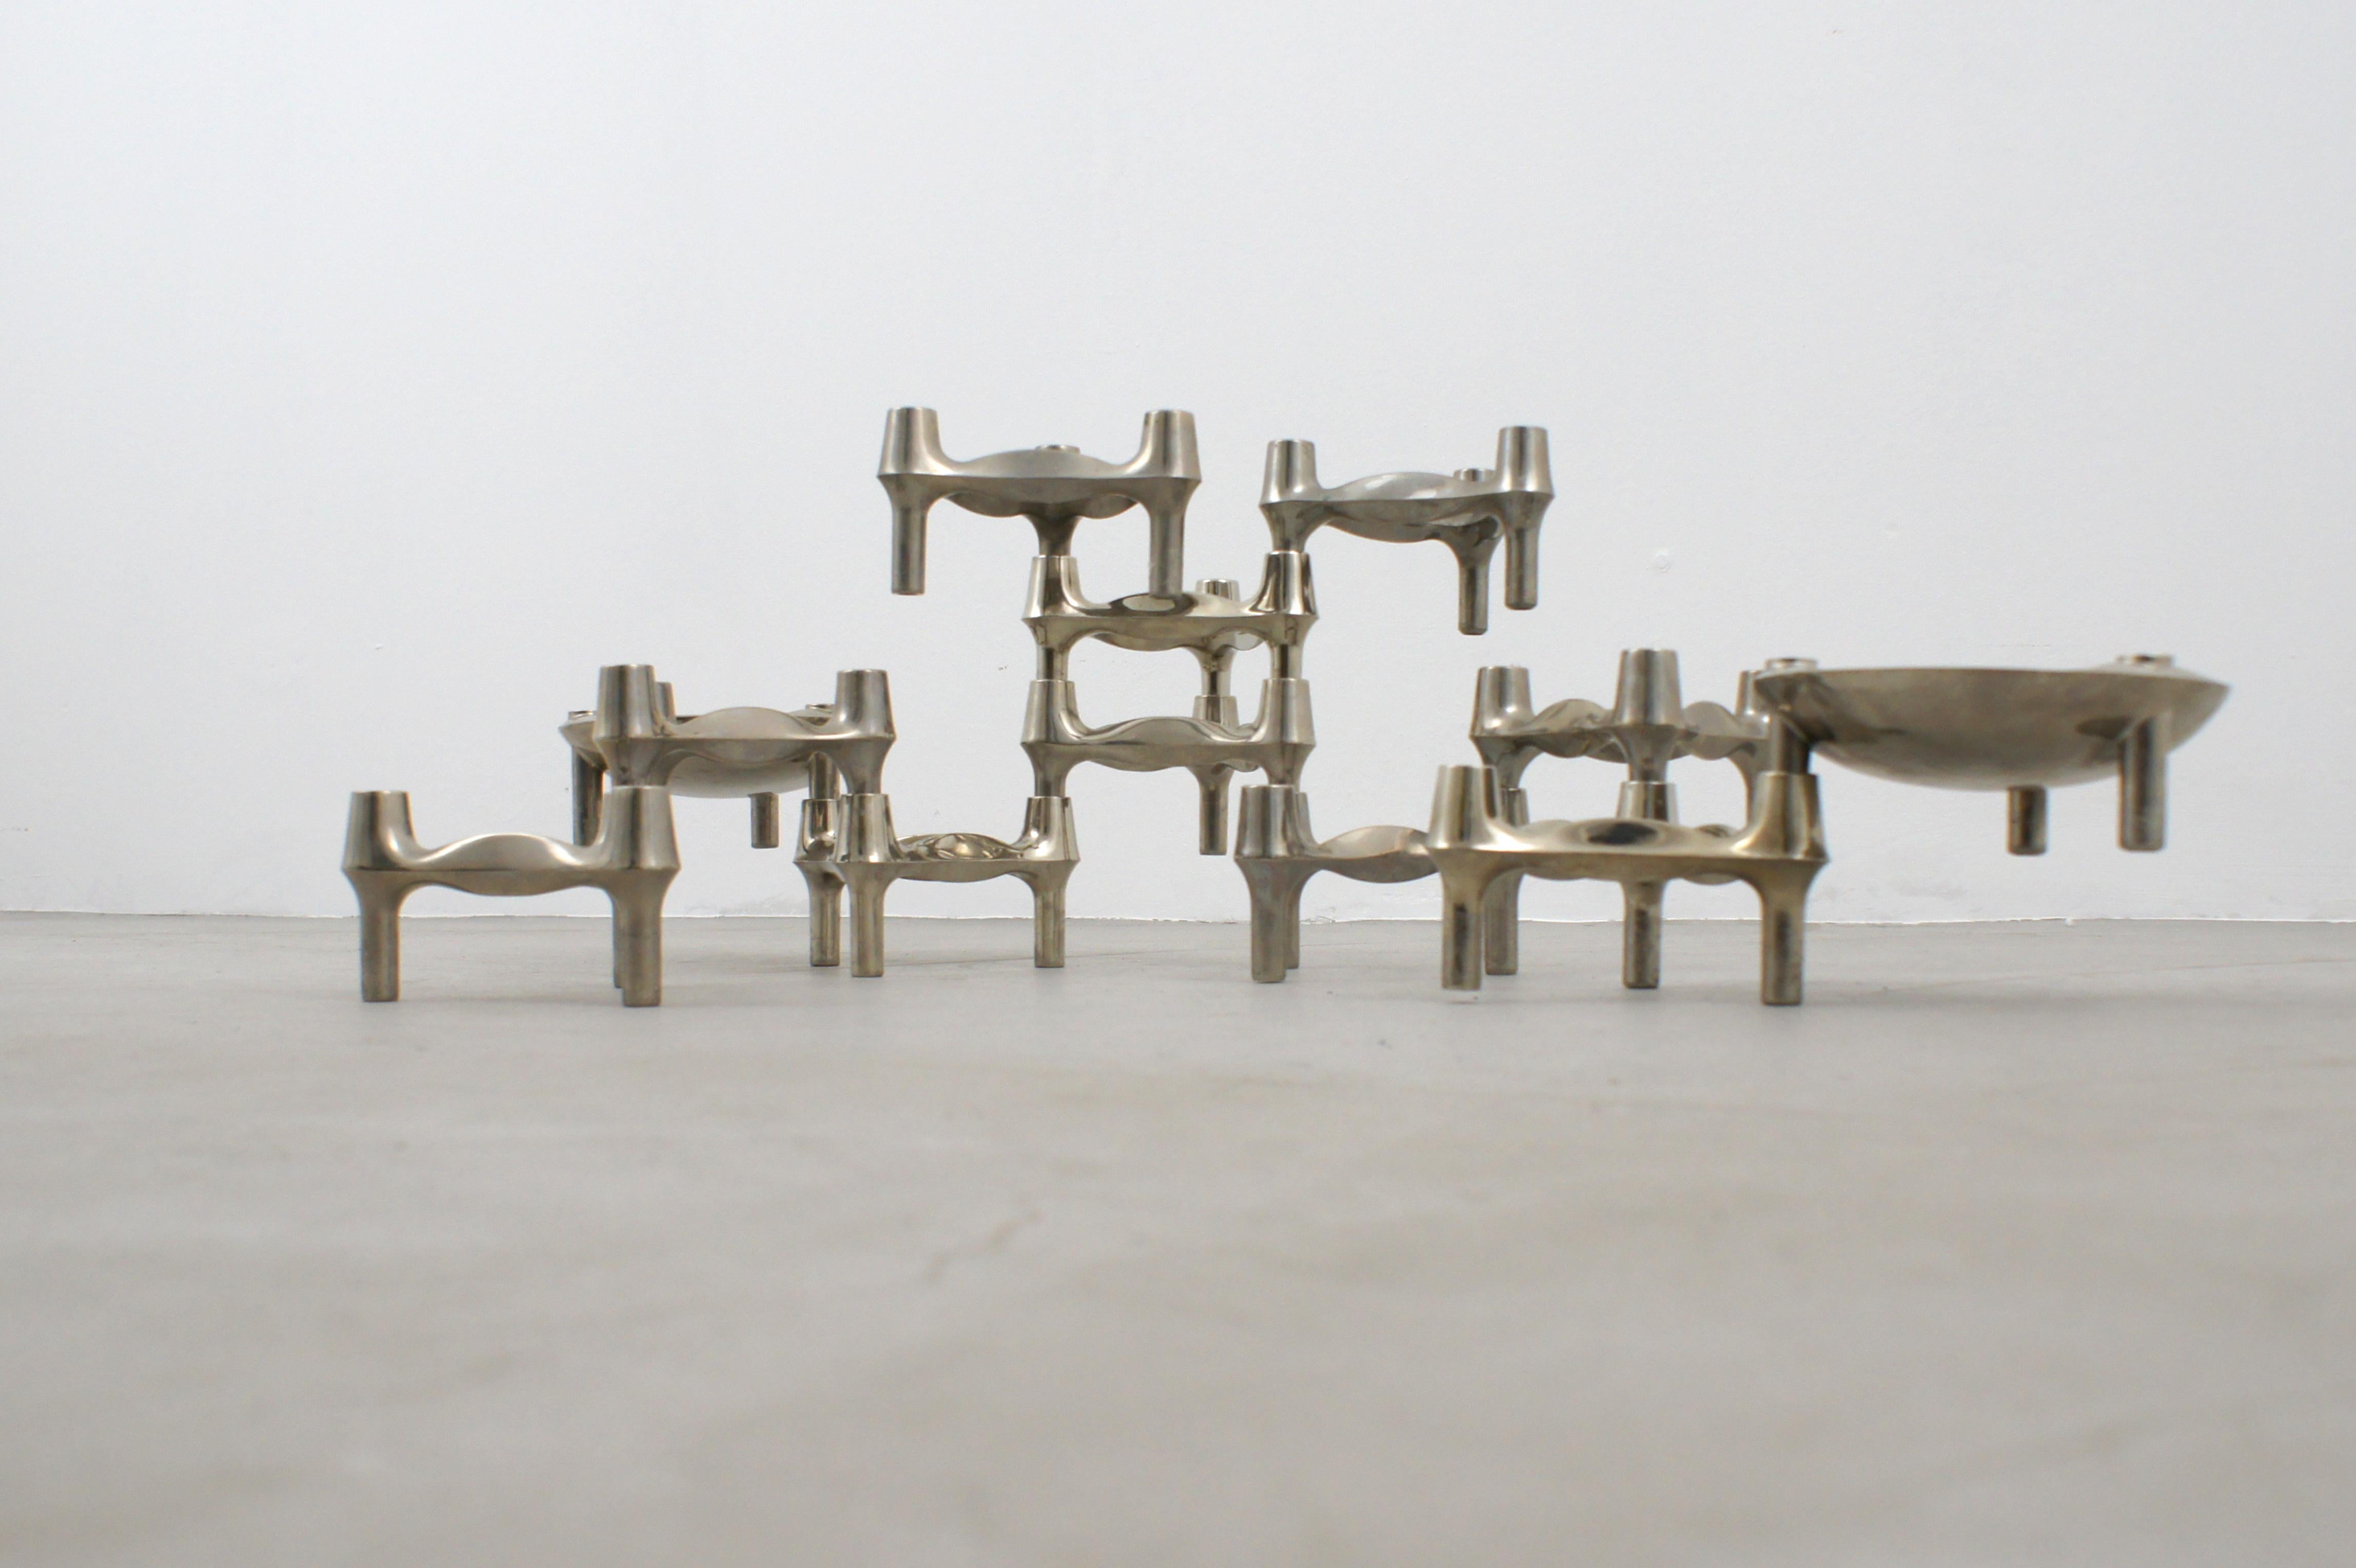 Kerzenhalter-Set aus verzinktem Metall, hergestellt von BMF Nagel in den 1960er Jahren nach einem Entwurf von Fritz Nagel. 

Dank ihrer Form können die Module in vielen Formen zusammengesetzt werden, um ein sich ständig veränderndes skulpturales